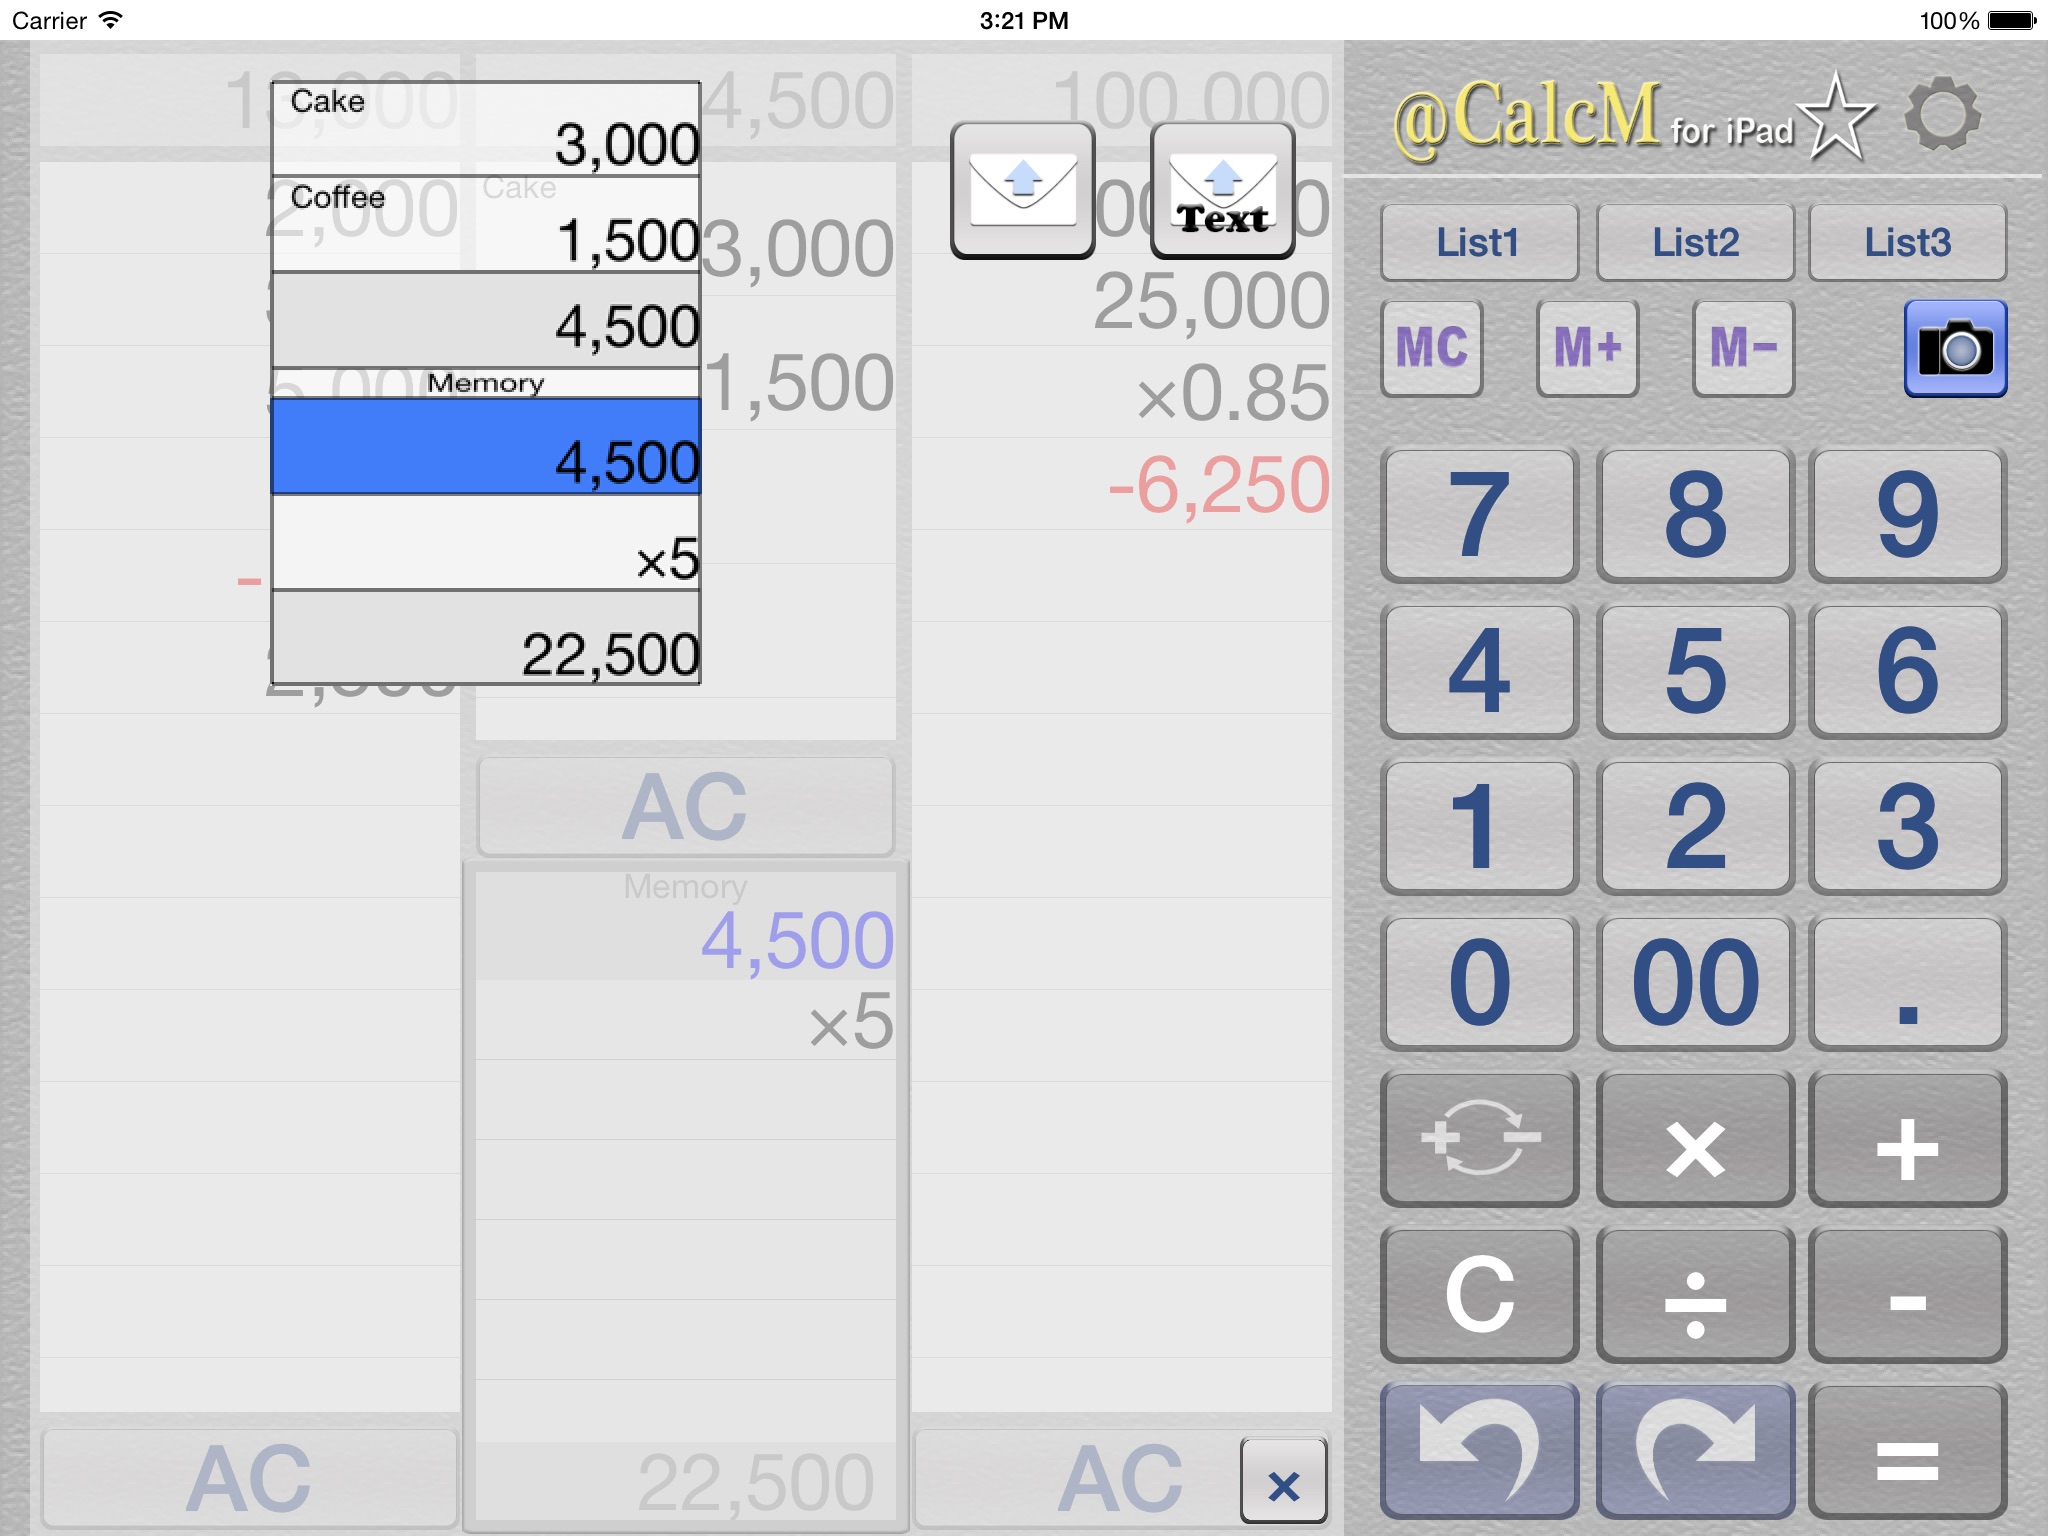 ACalcM (Calculator with a list) screenshot 2